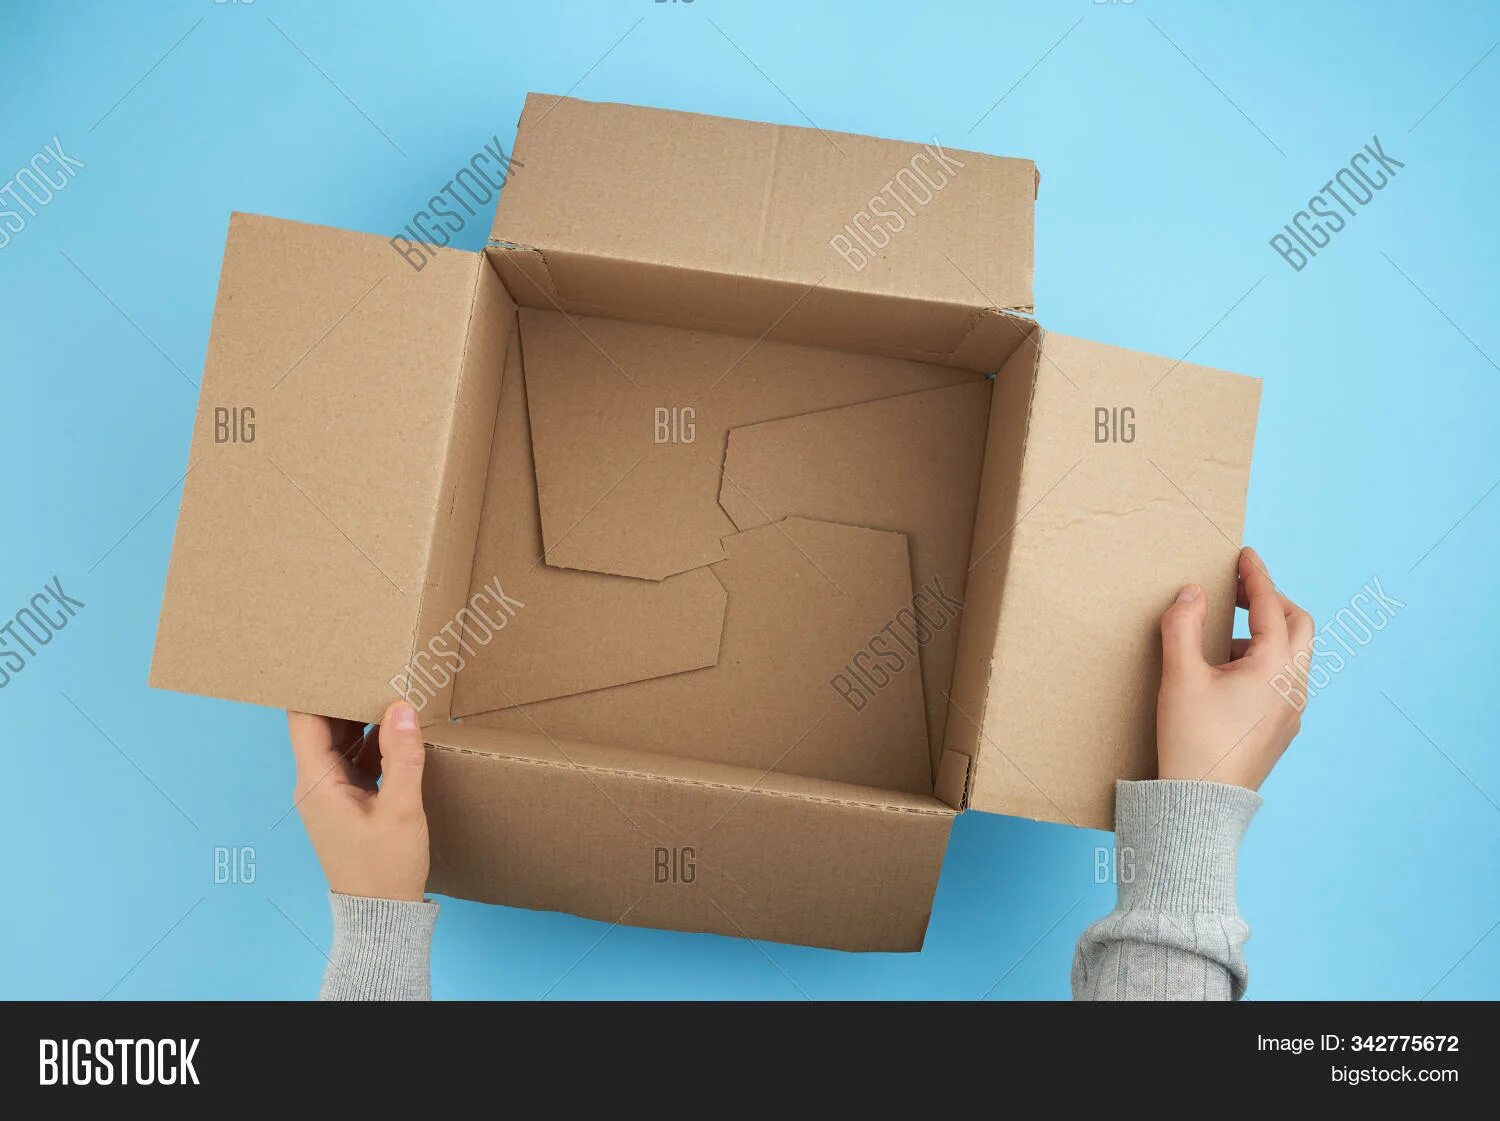 Открой коробку номер 3. Открывает коробку. Человек открывает коробку. Открытая коробка в руках. Коробка открытая в руках вид сверху.